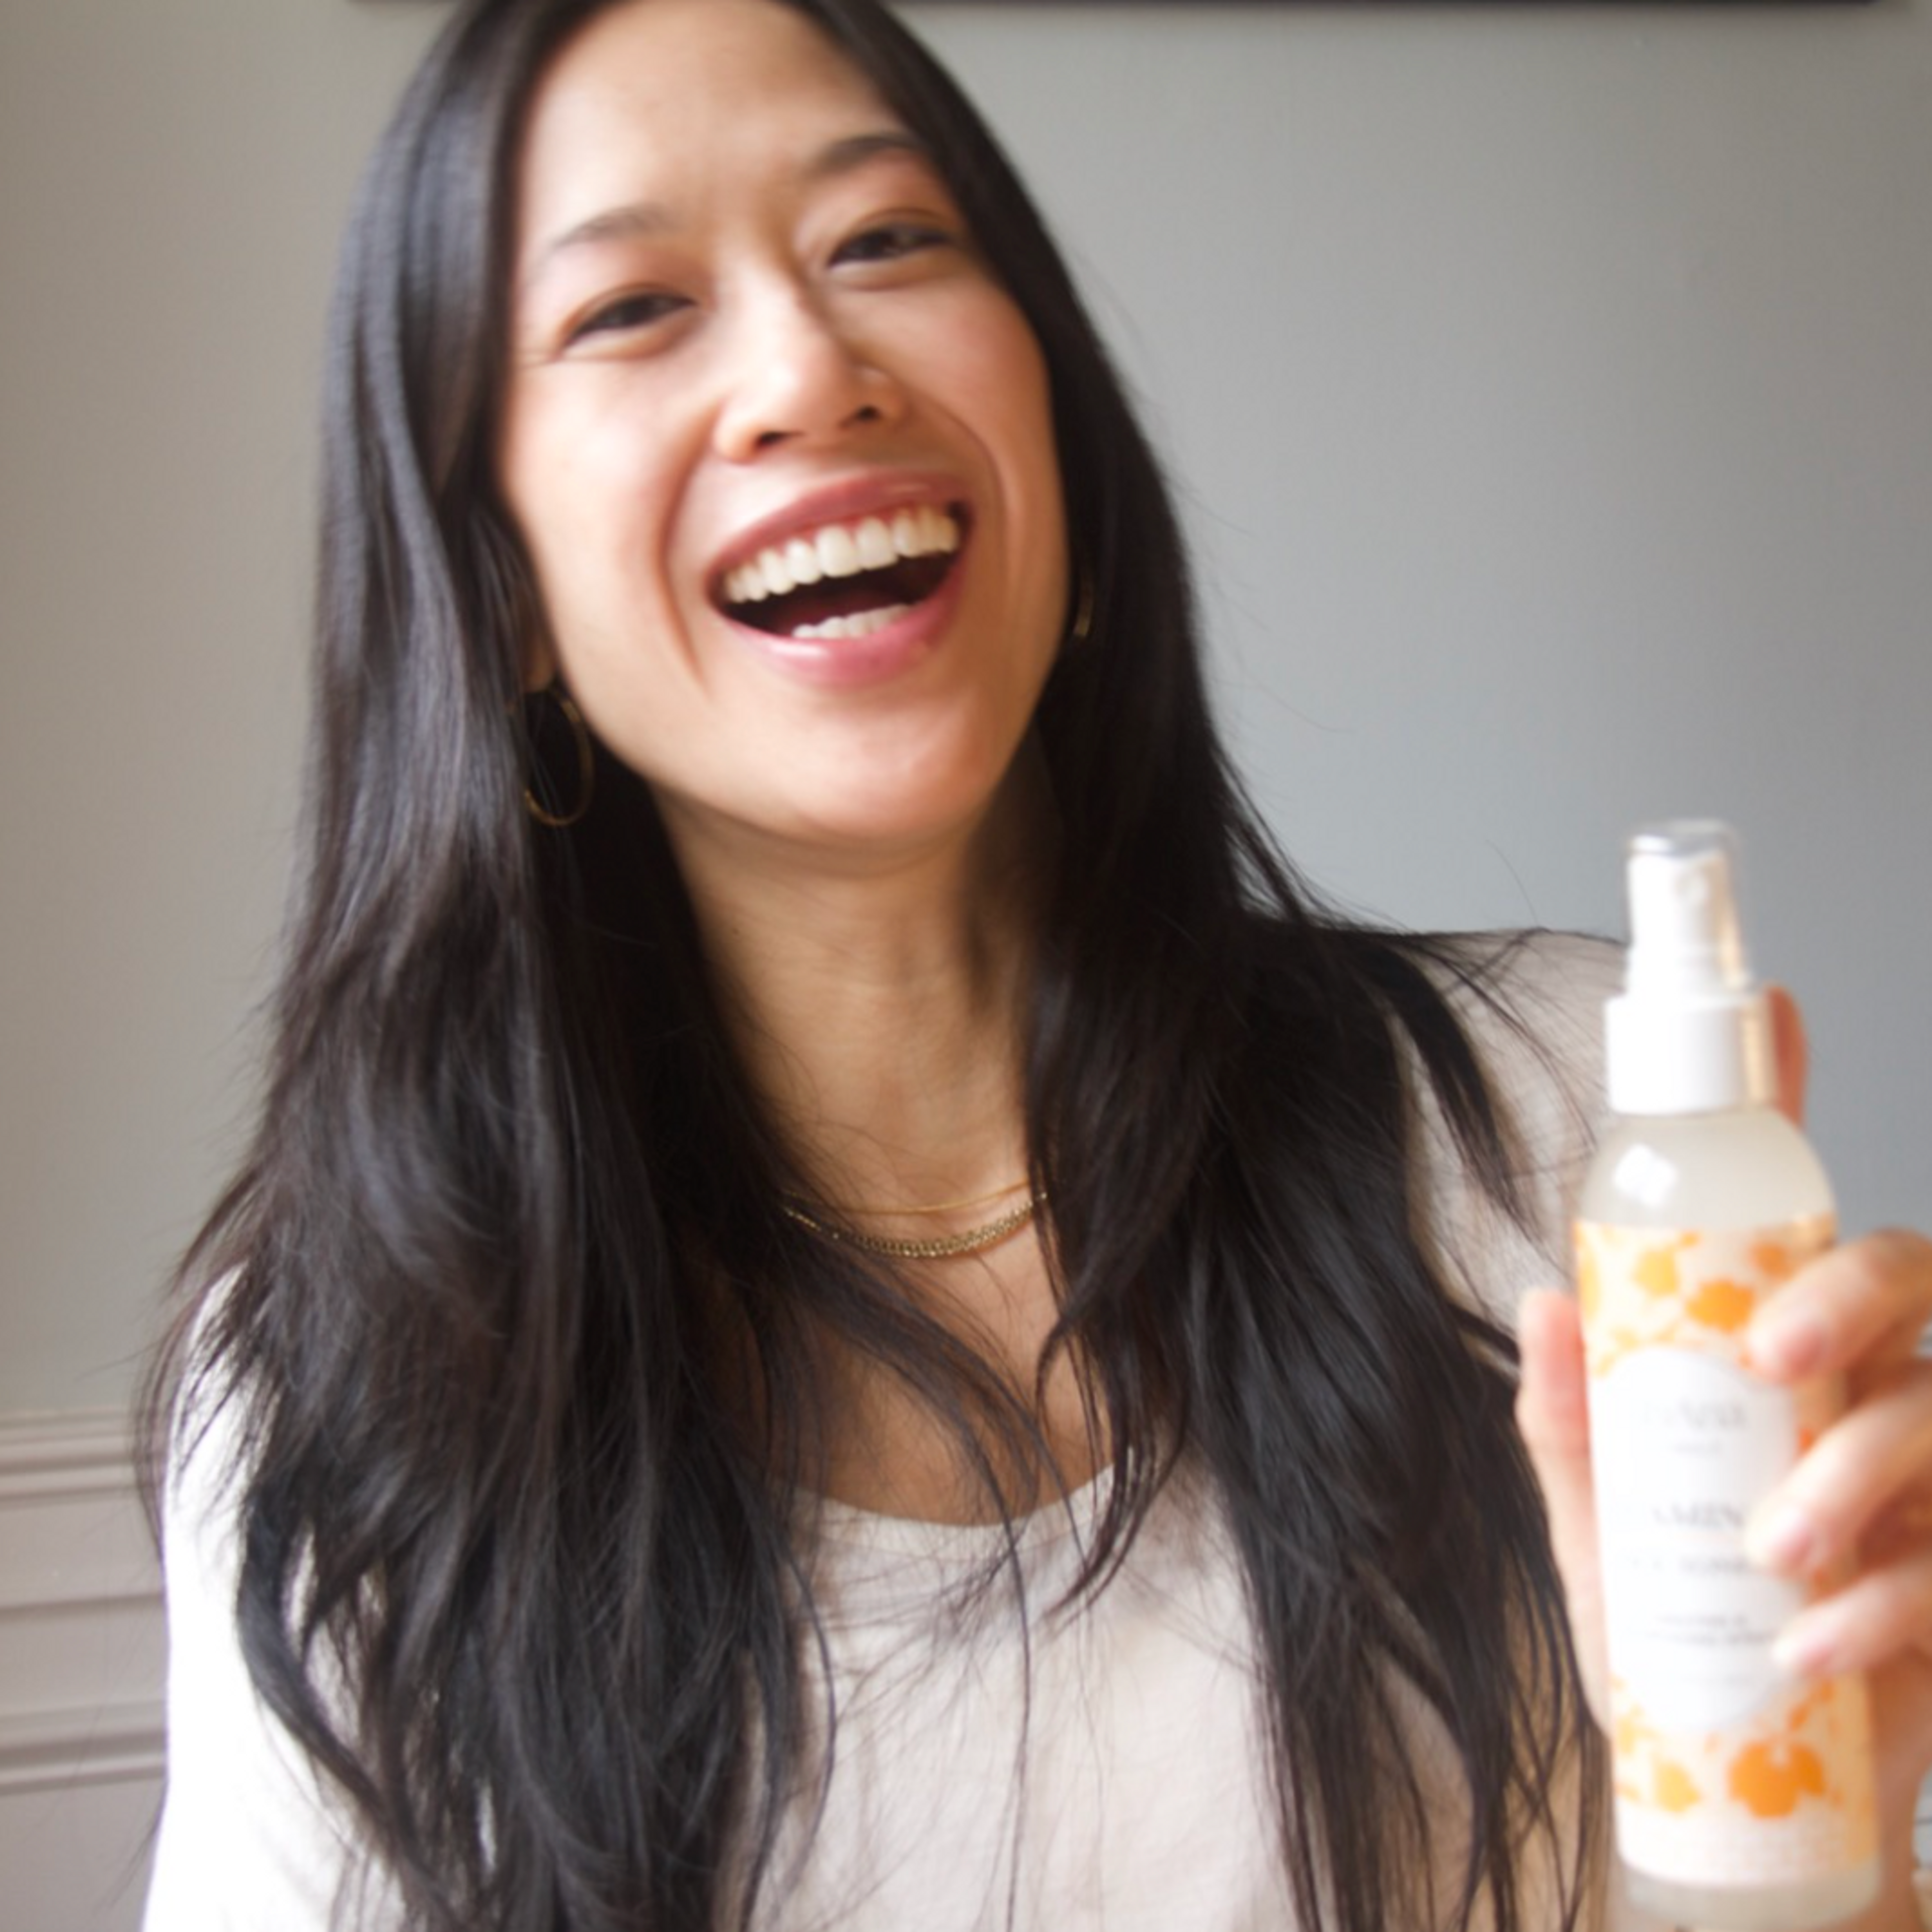 LilyAna Naturals Vitamin C Face Toner